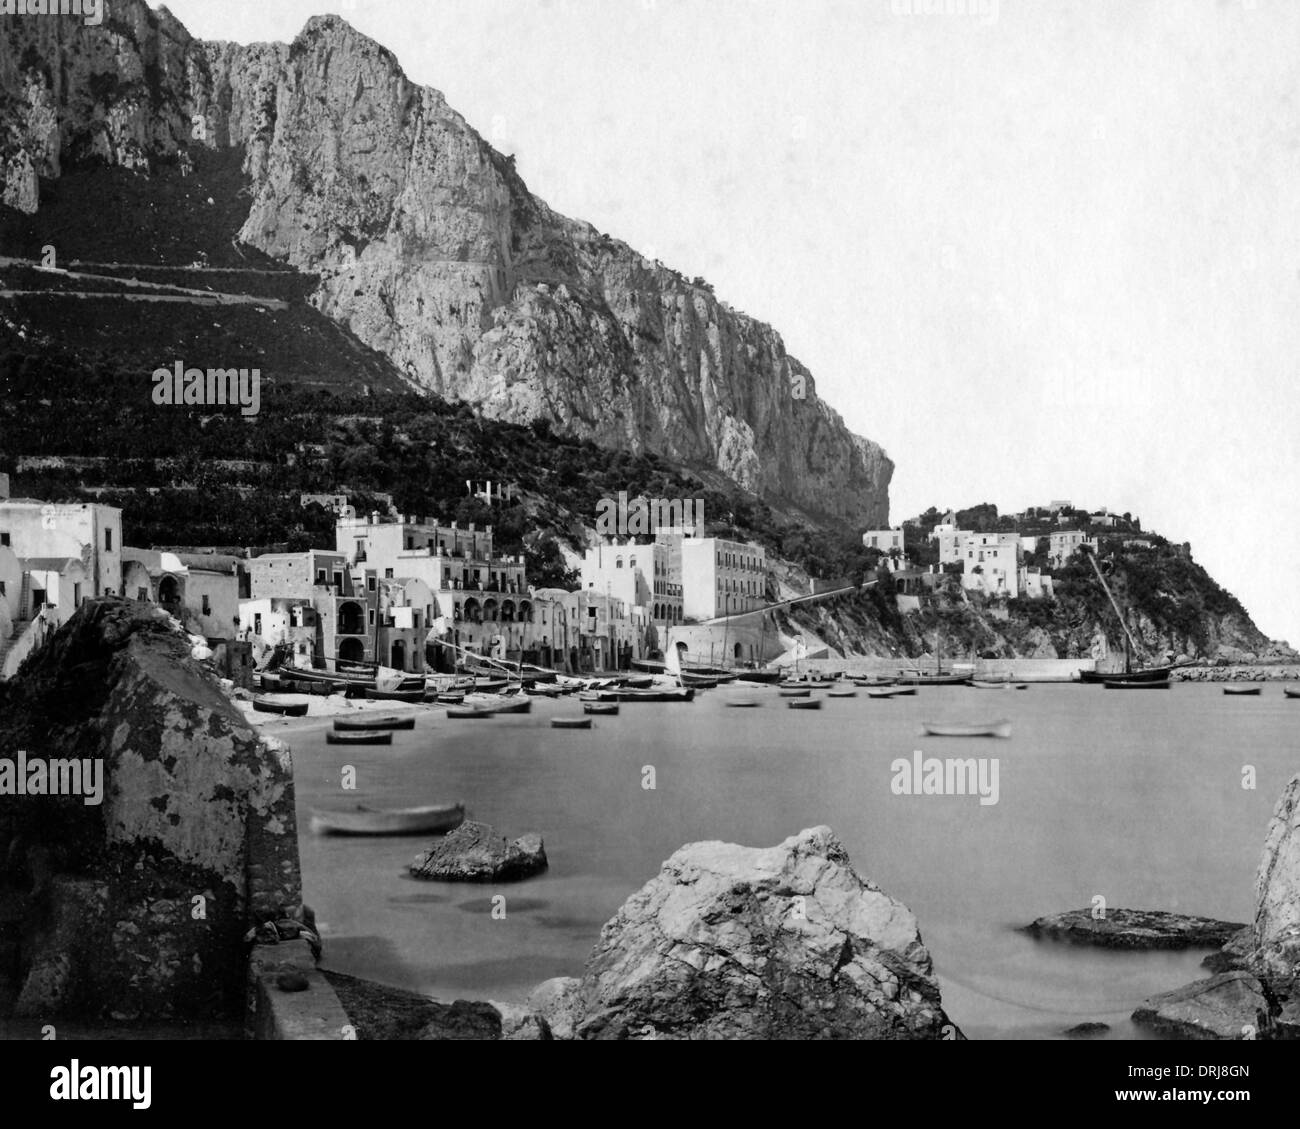 Marina on the Isle of Capri, Italy Stock Photo